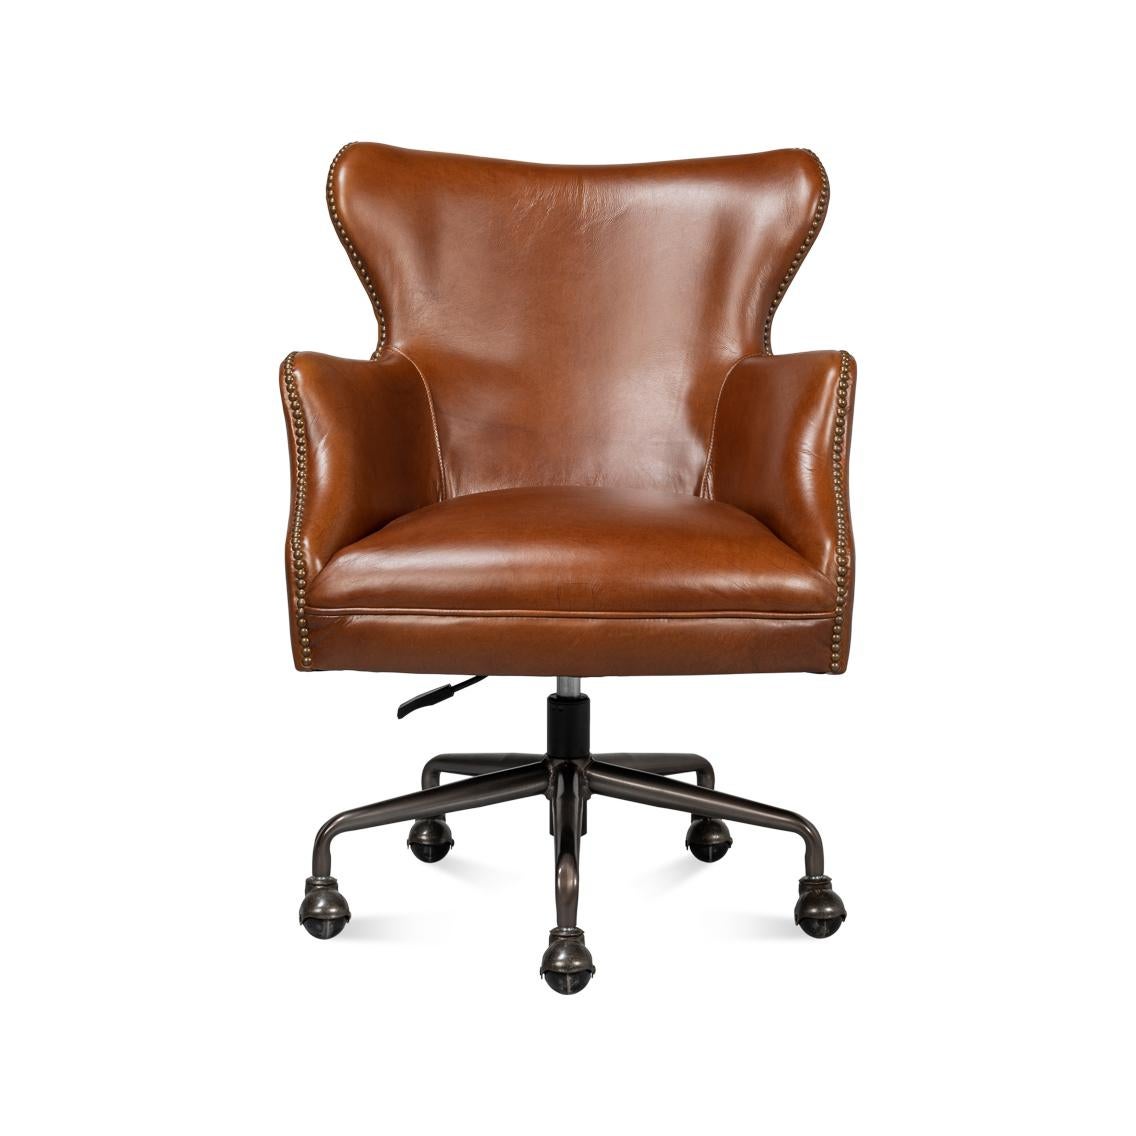 Une chaise de bureau moderne en cuir marron avec une garniture à clous en laiton. Un style classique et intemporel, réalisé en cuir brun. Cette chaise pratique et fonctionnelle rehaussera l'aspect et la convivialité de tout bureau pendant que vous